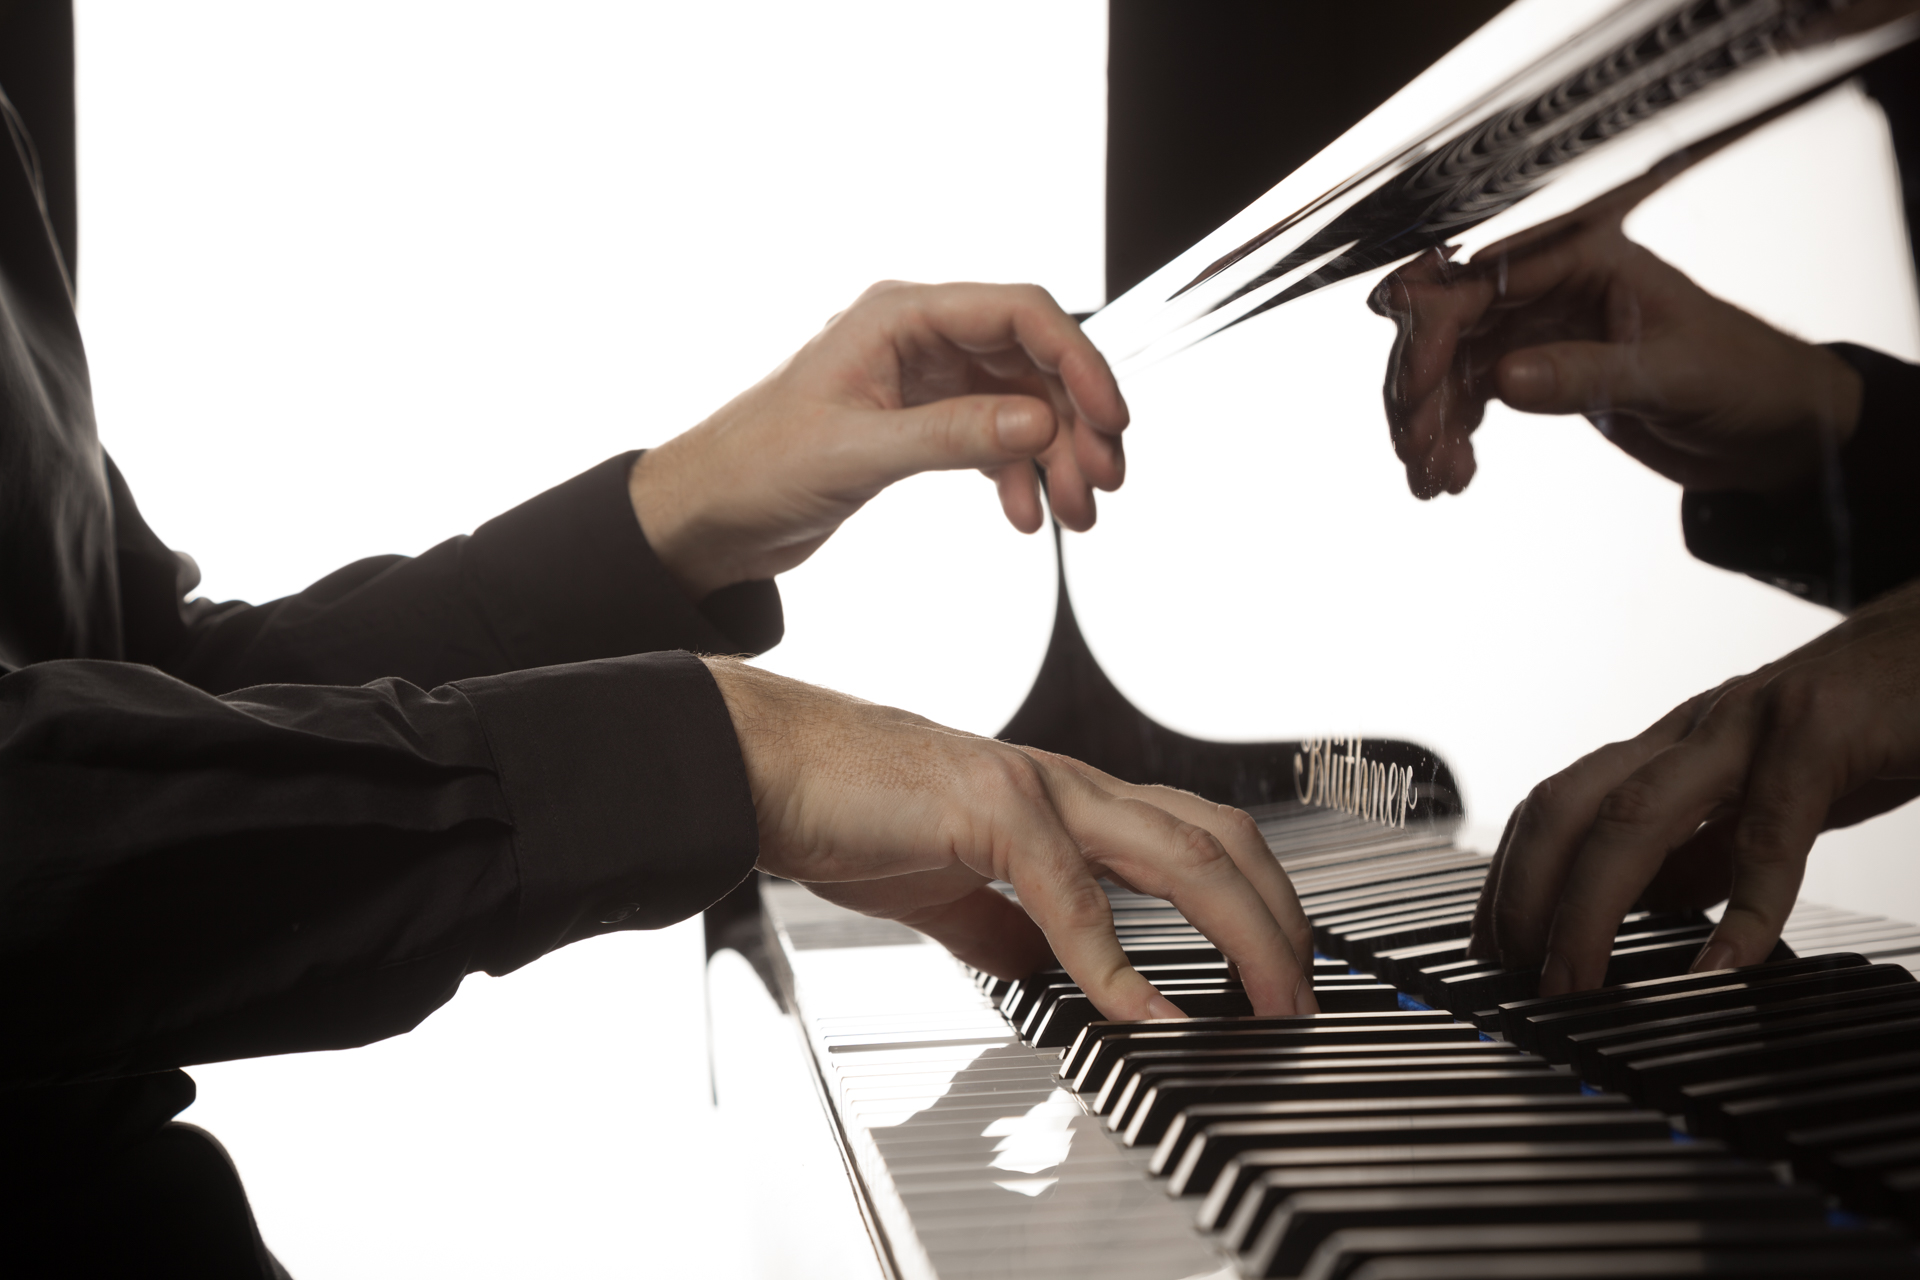 James Brown piano hands